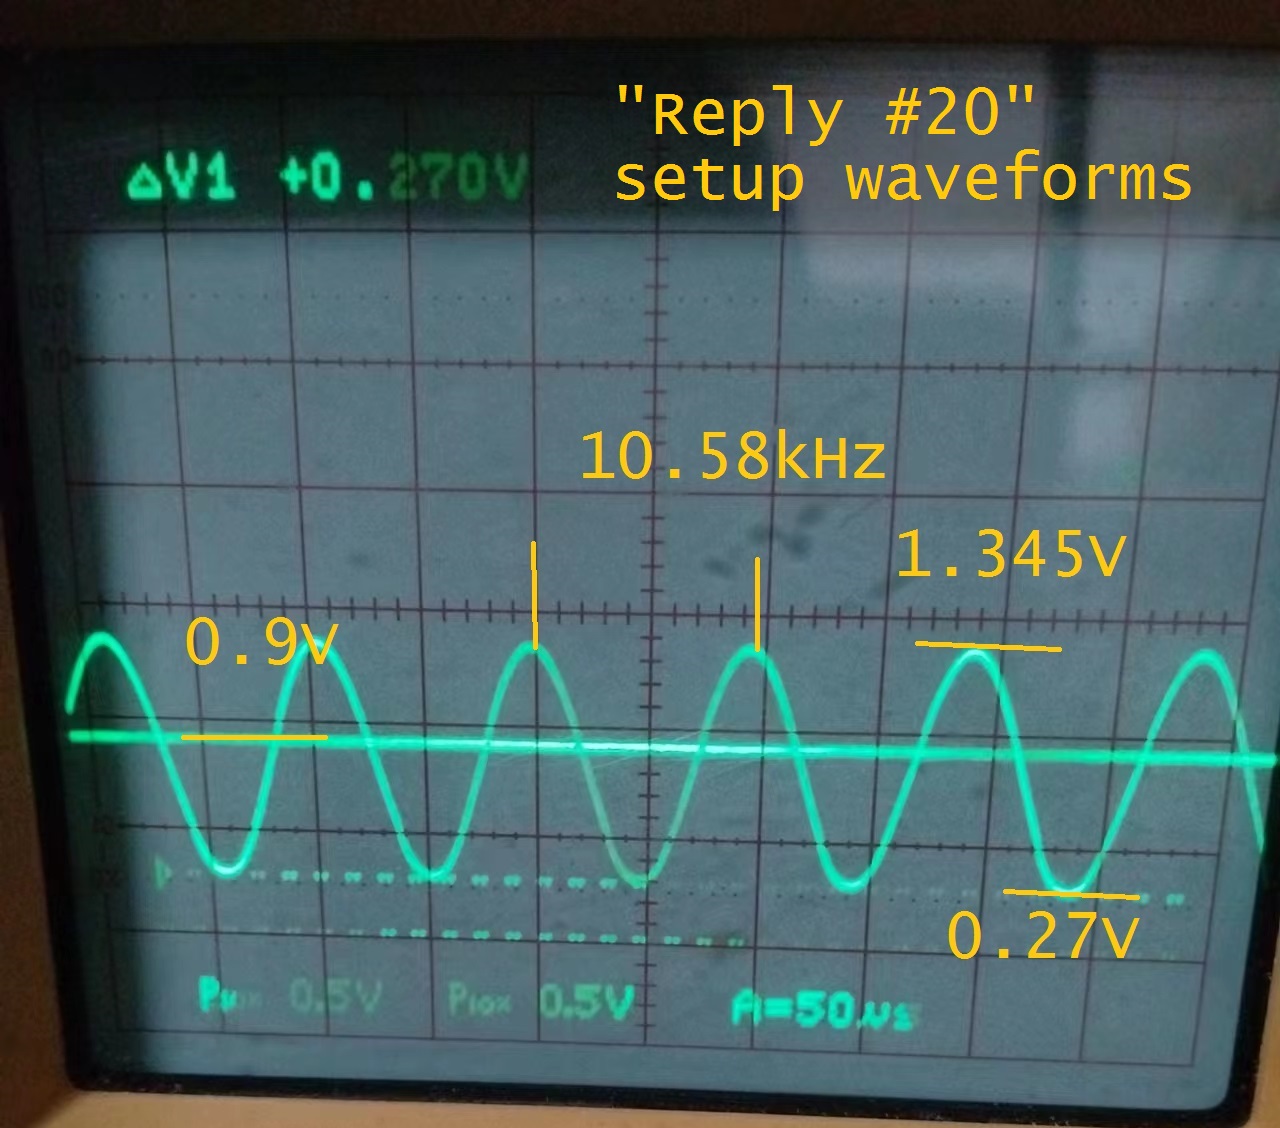 Reply 20 Waveform.jpg